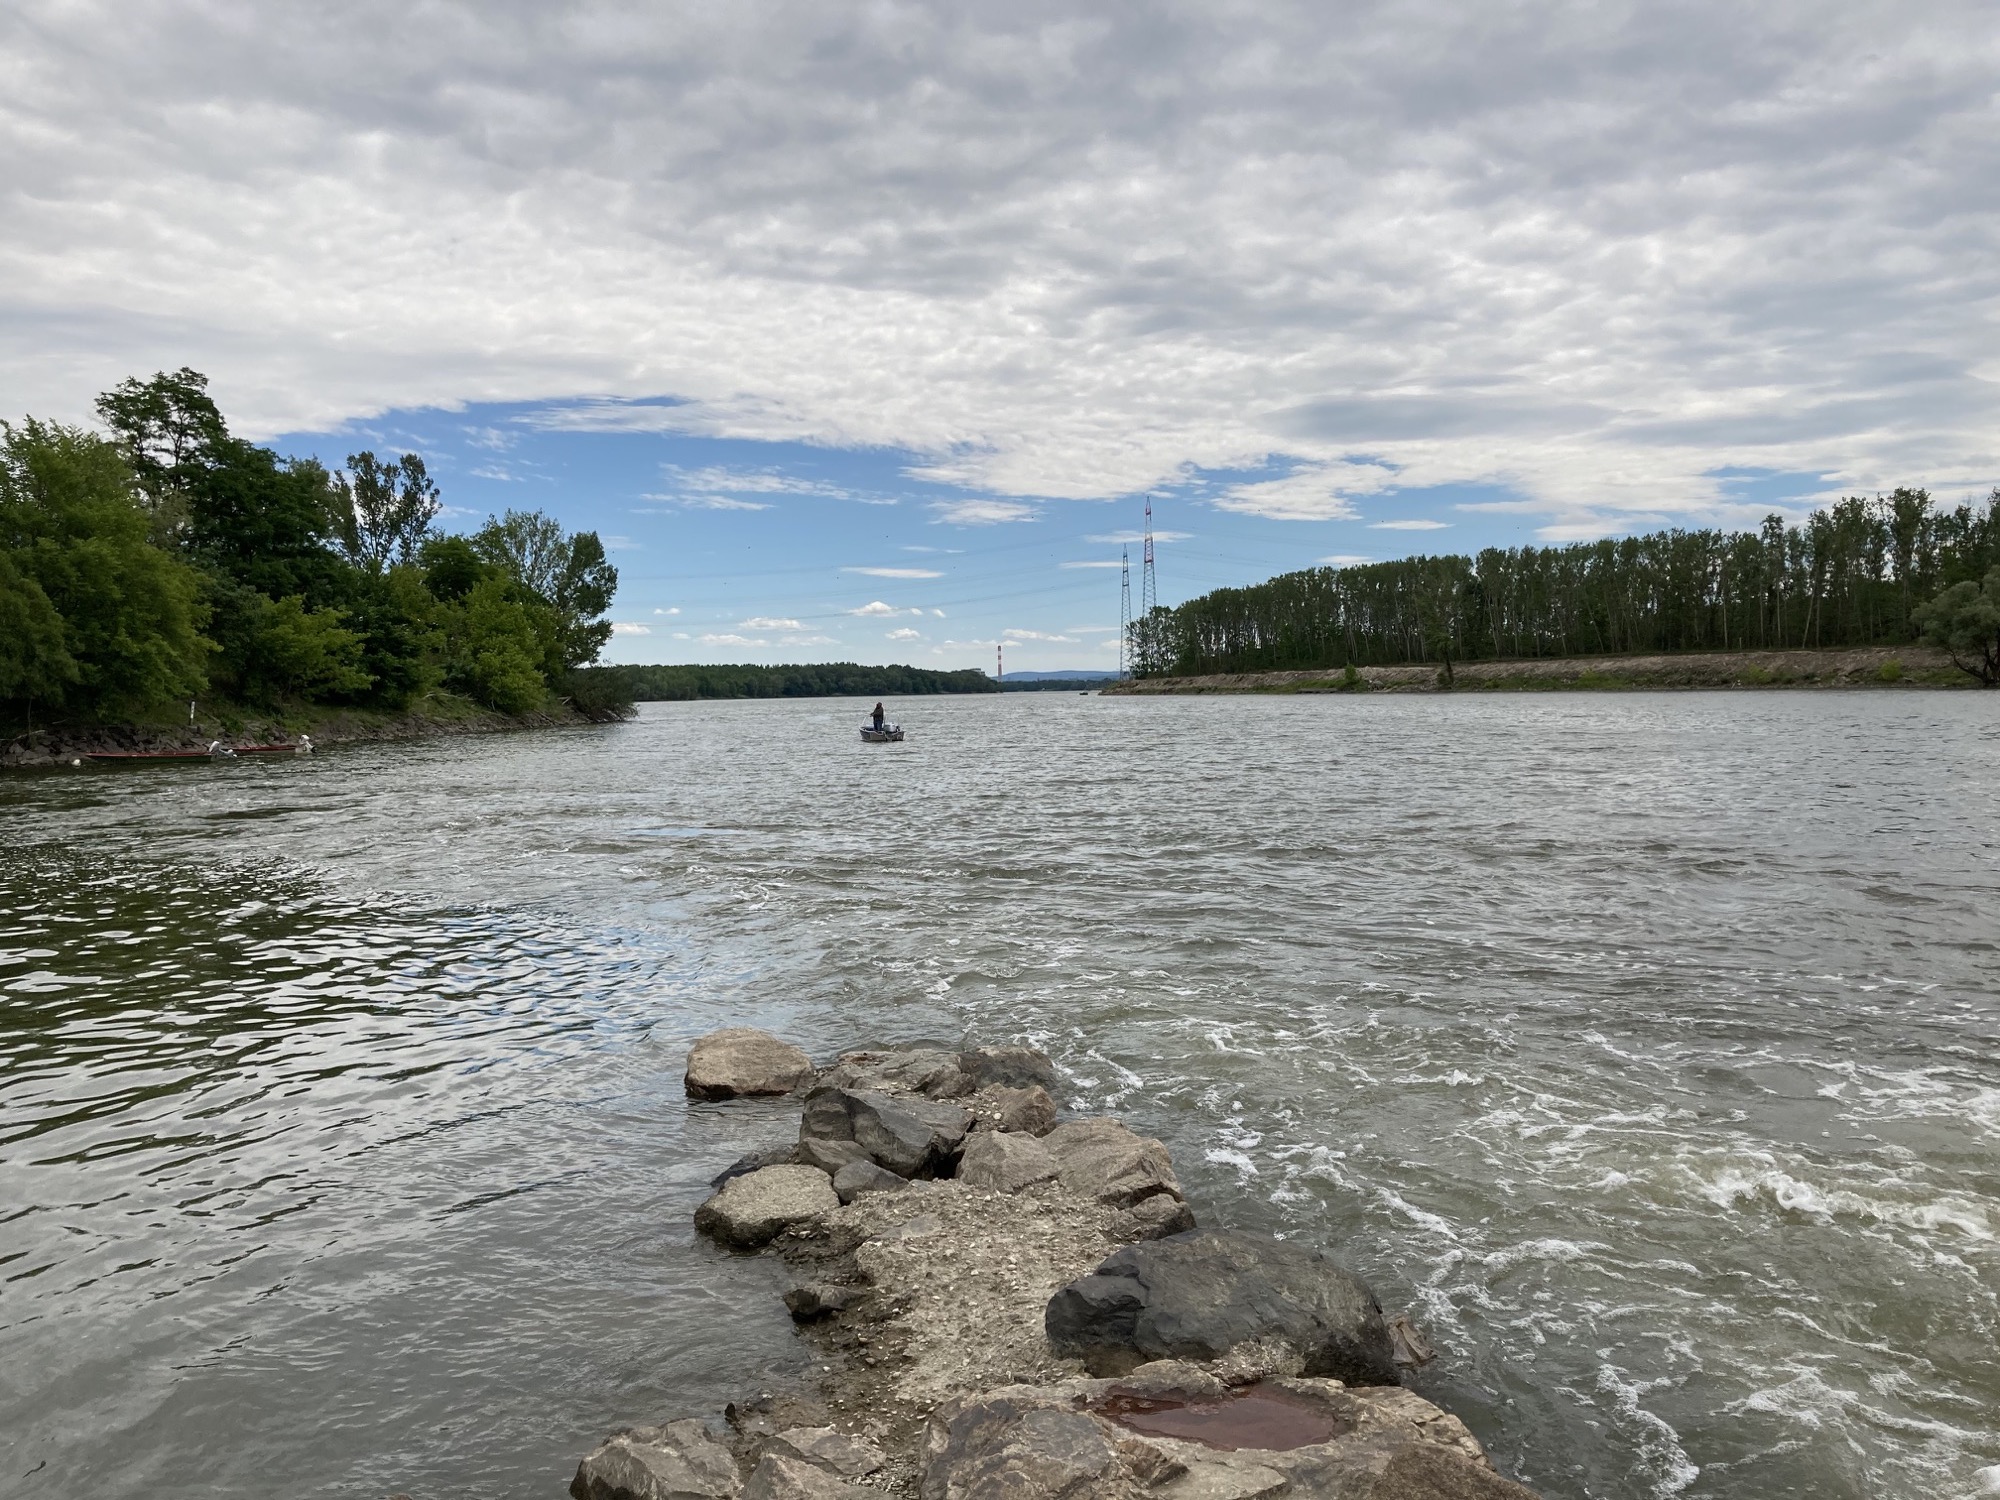 Mündung der Krems in die Donau, im Vordergrund eine ins Wasser ragende Steinspitze, dahinter ein Boot mit Angler, im Hintergrund Strommasten und der Turm eines Kraftwerks